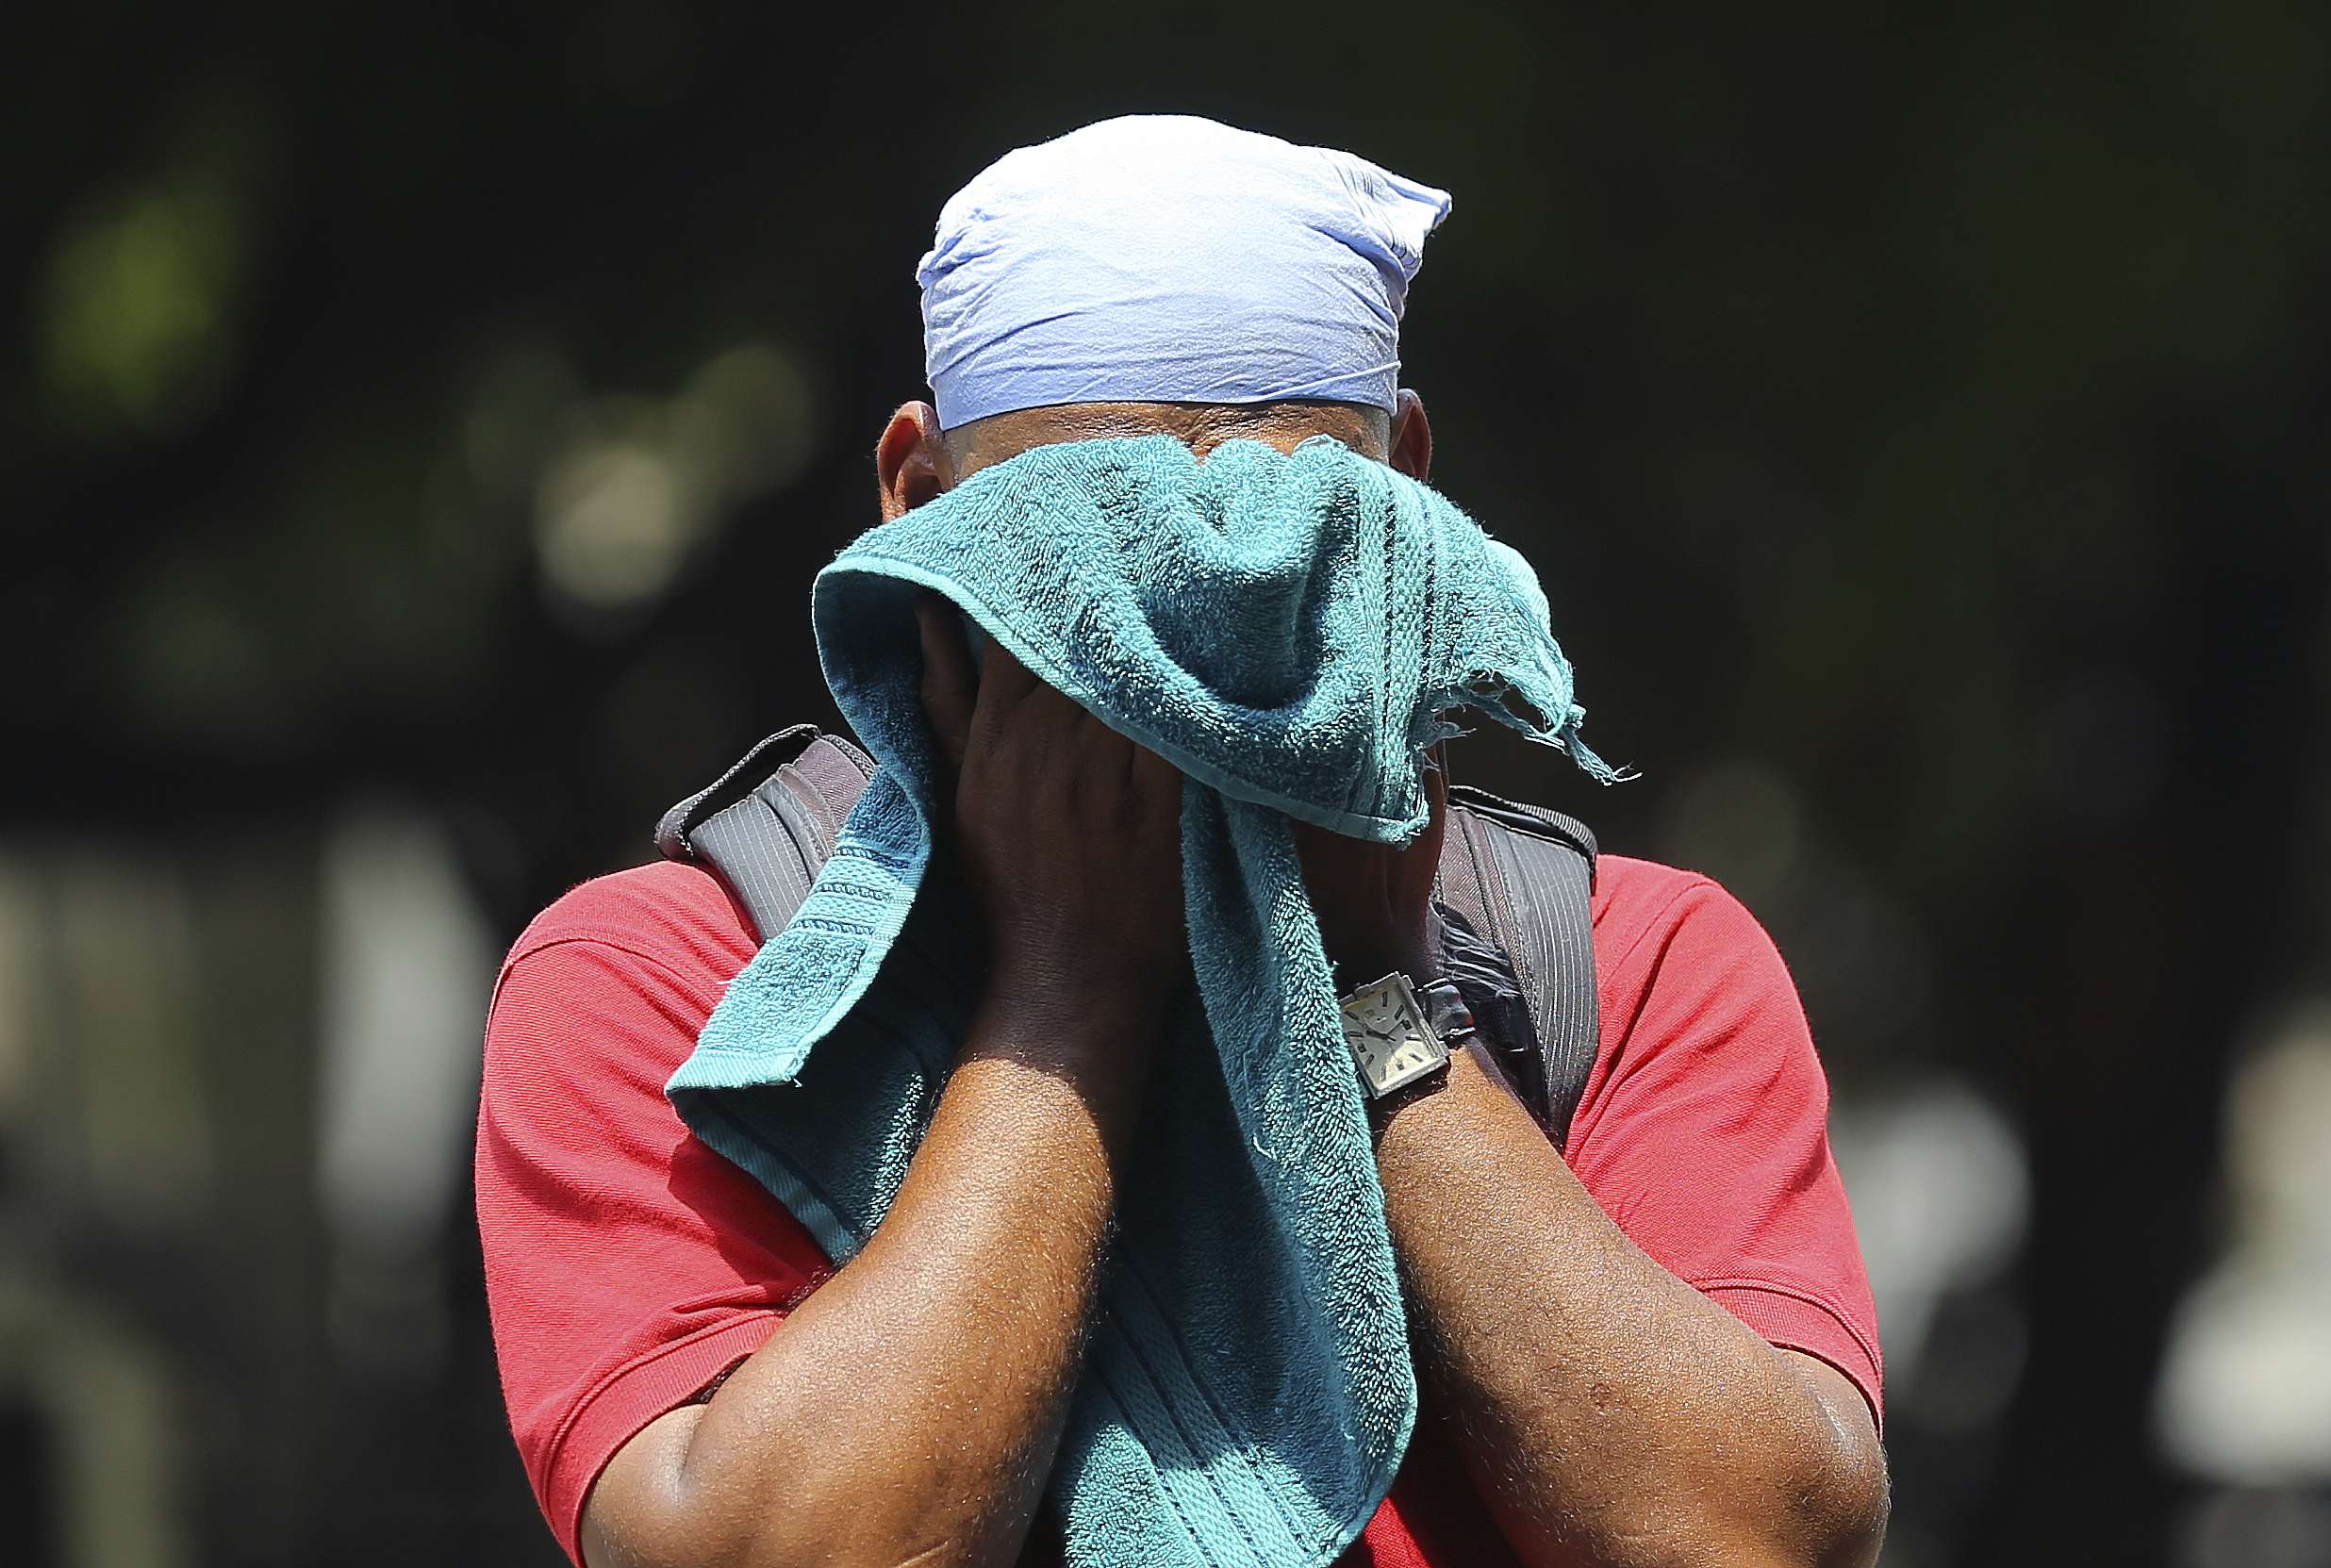 رجل هندي يستخدم منشفة لمسح العرق على وجهه في يوم صيفي حار ورطب في حيدر أباد بالهند